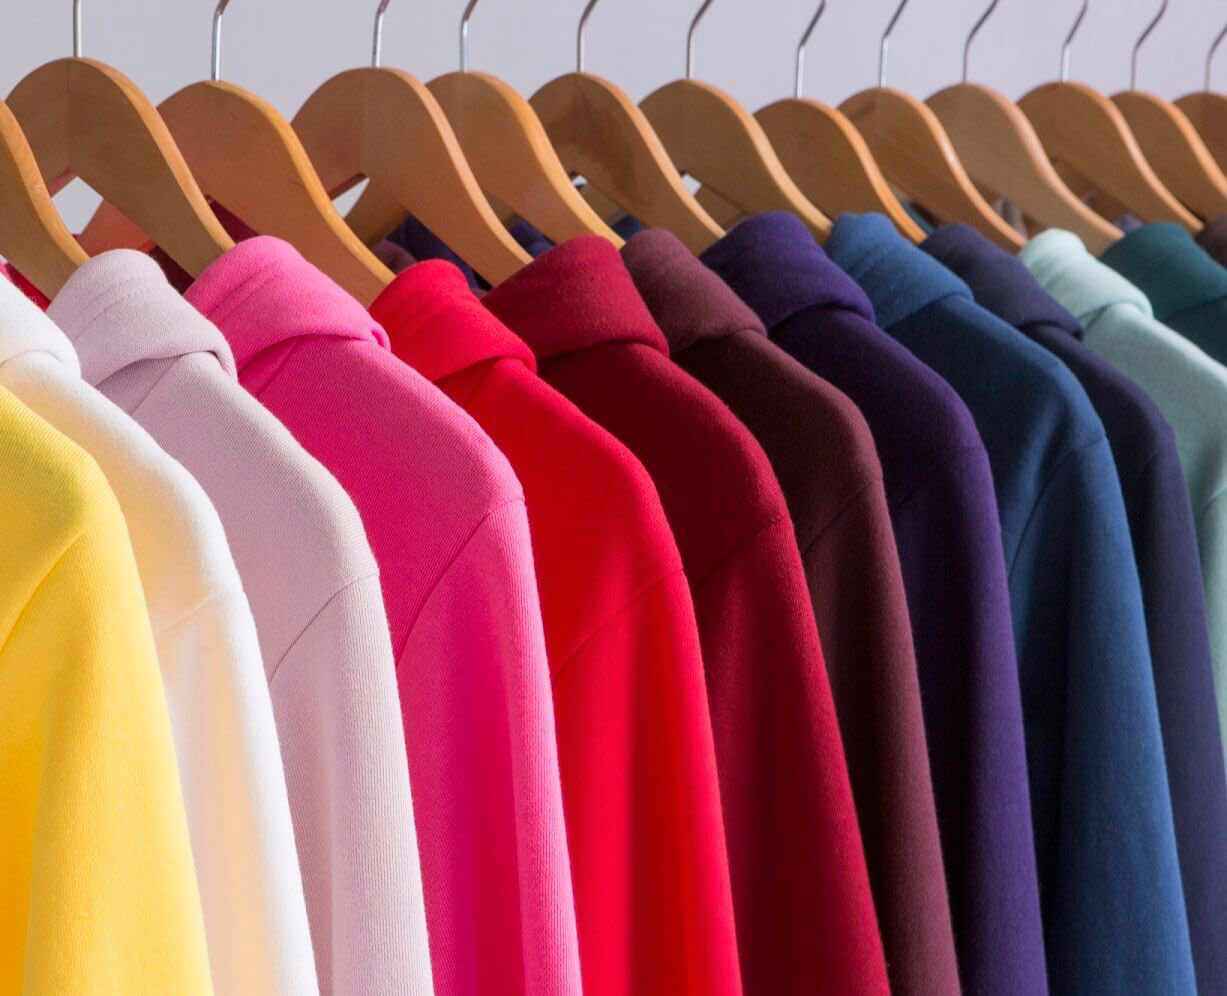 Des pulls American Apparel™ aux couleurs vives sont suspendus à un portant.